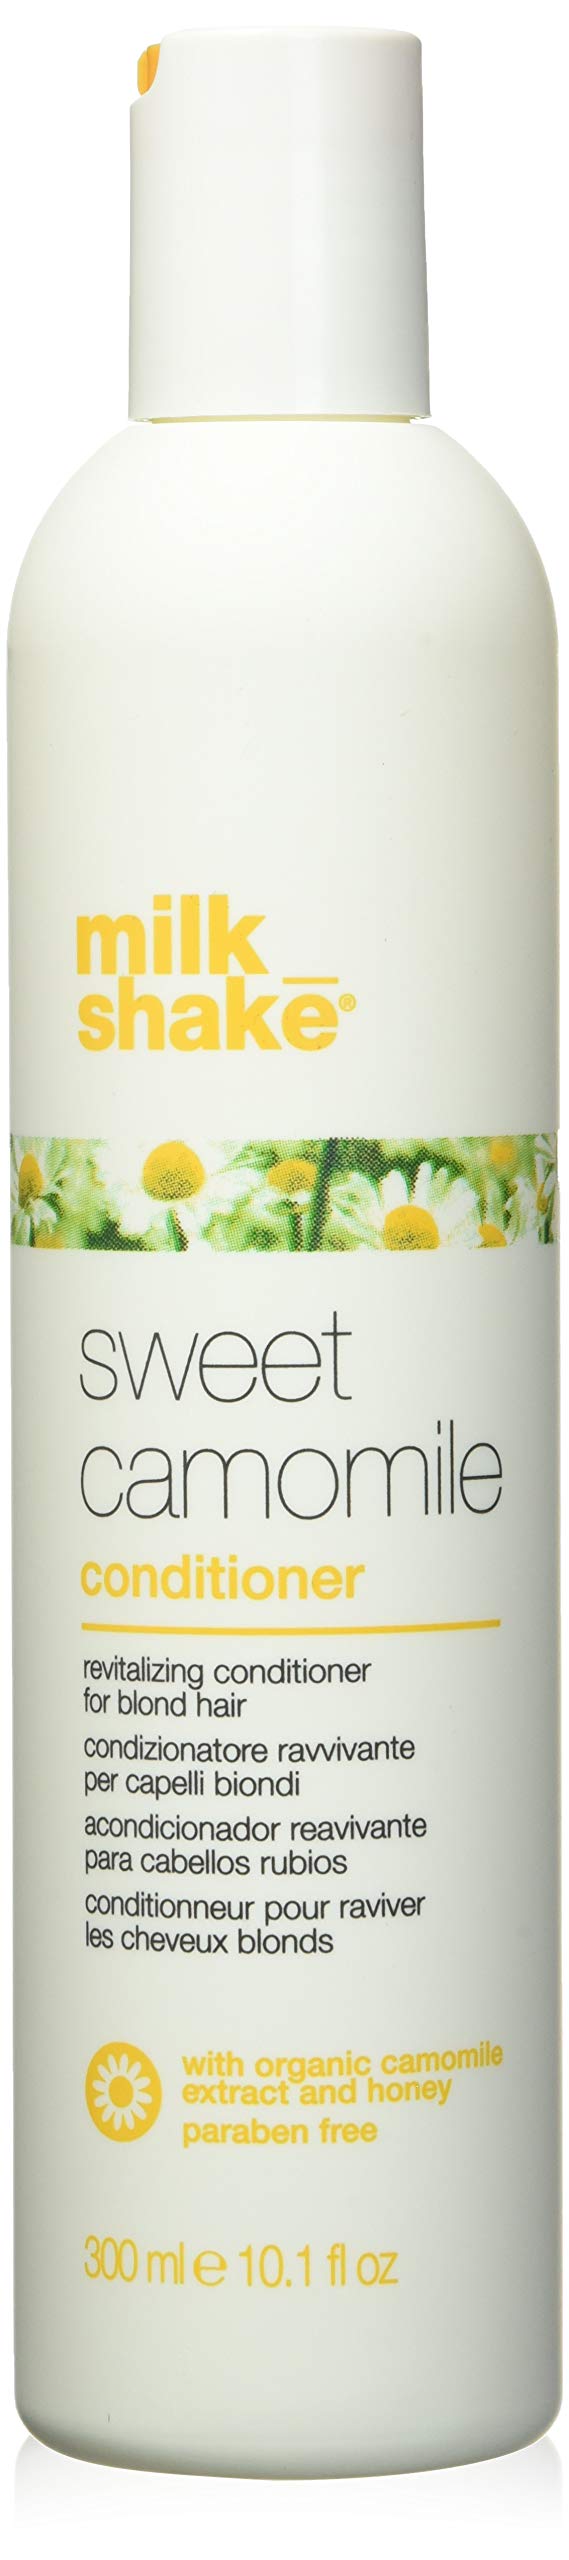 Milk_shake Camomile Conditioner 300ml